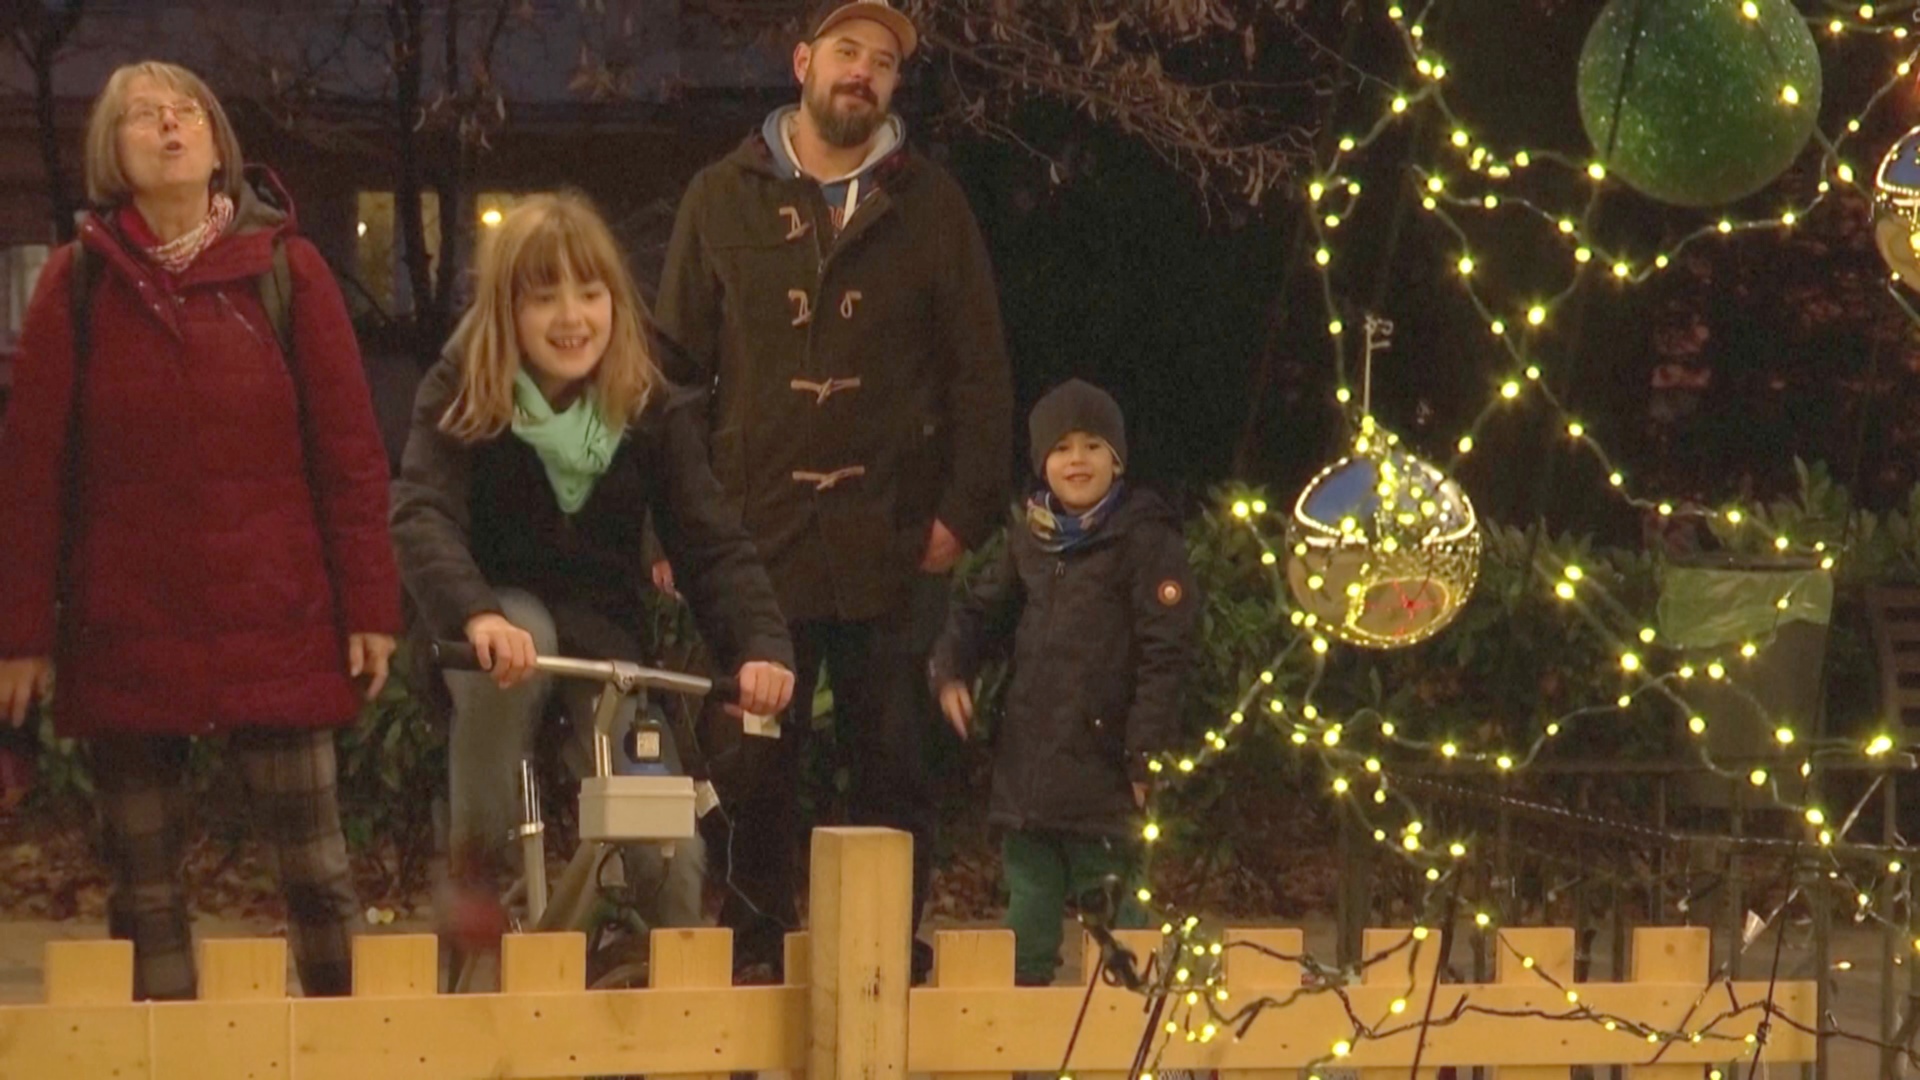 Покрути педали и зажги ёлку: как подготовились к Рождеству в Будапеште